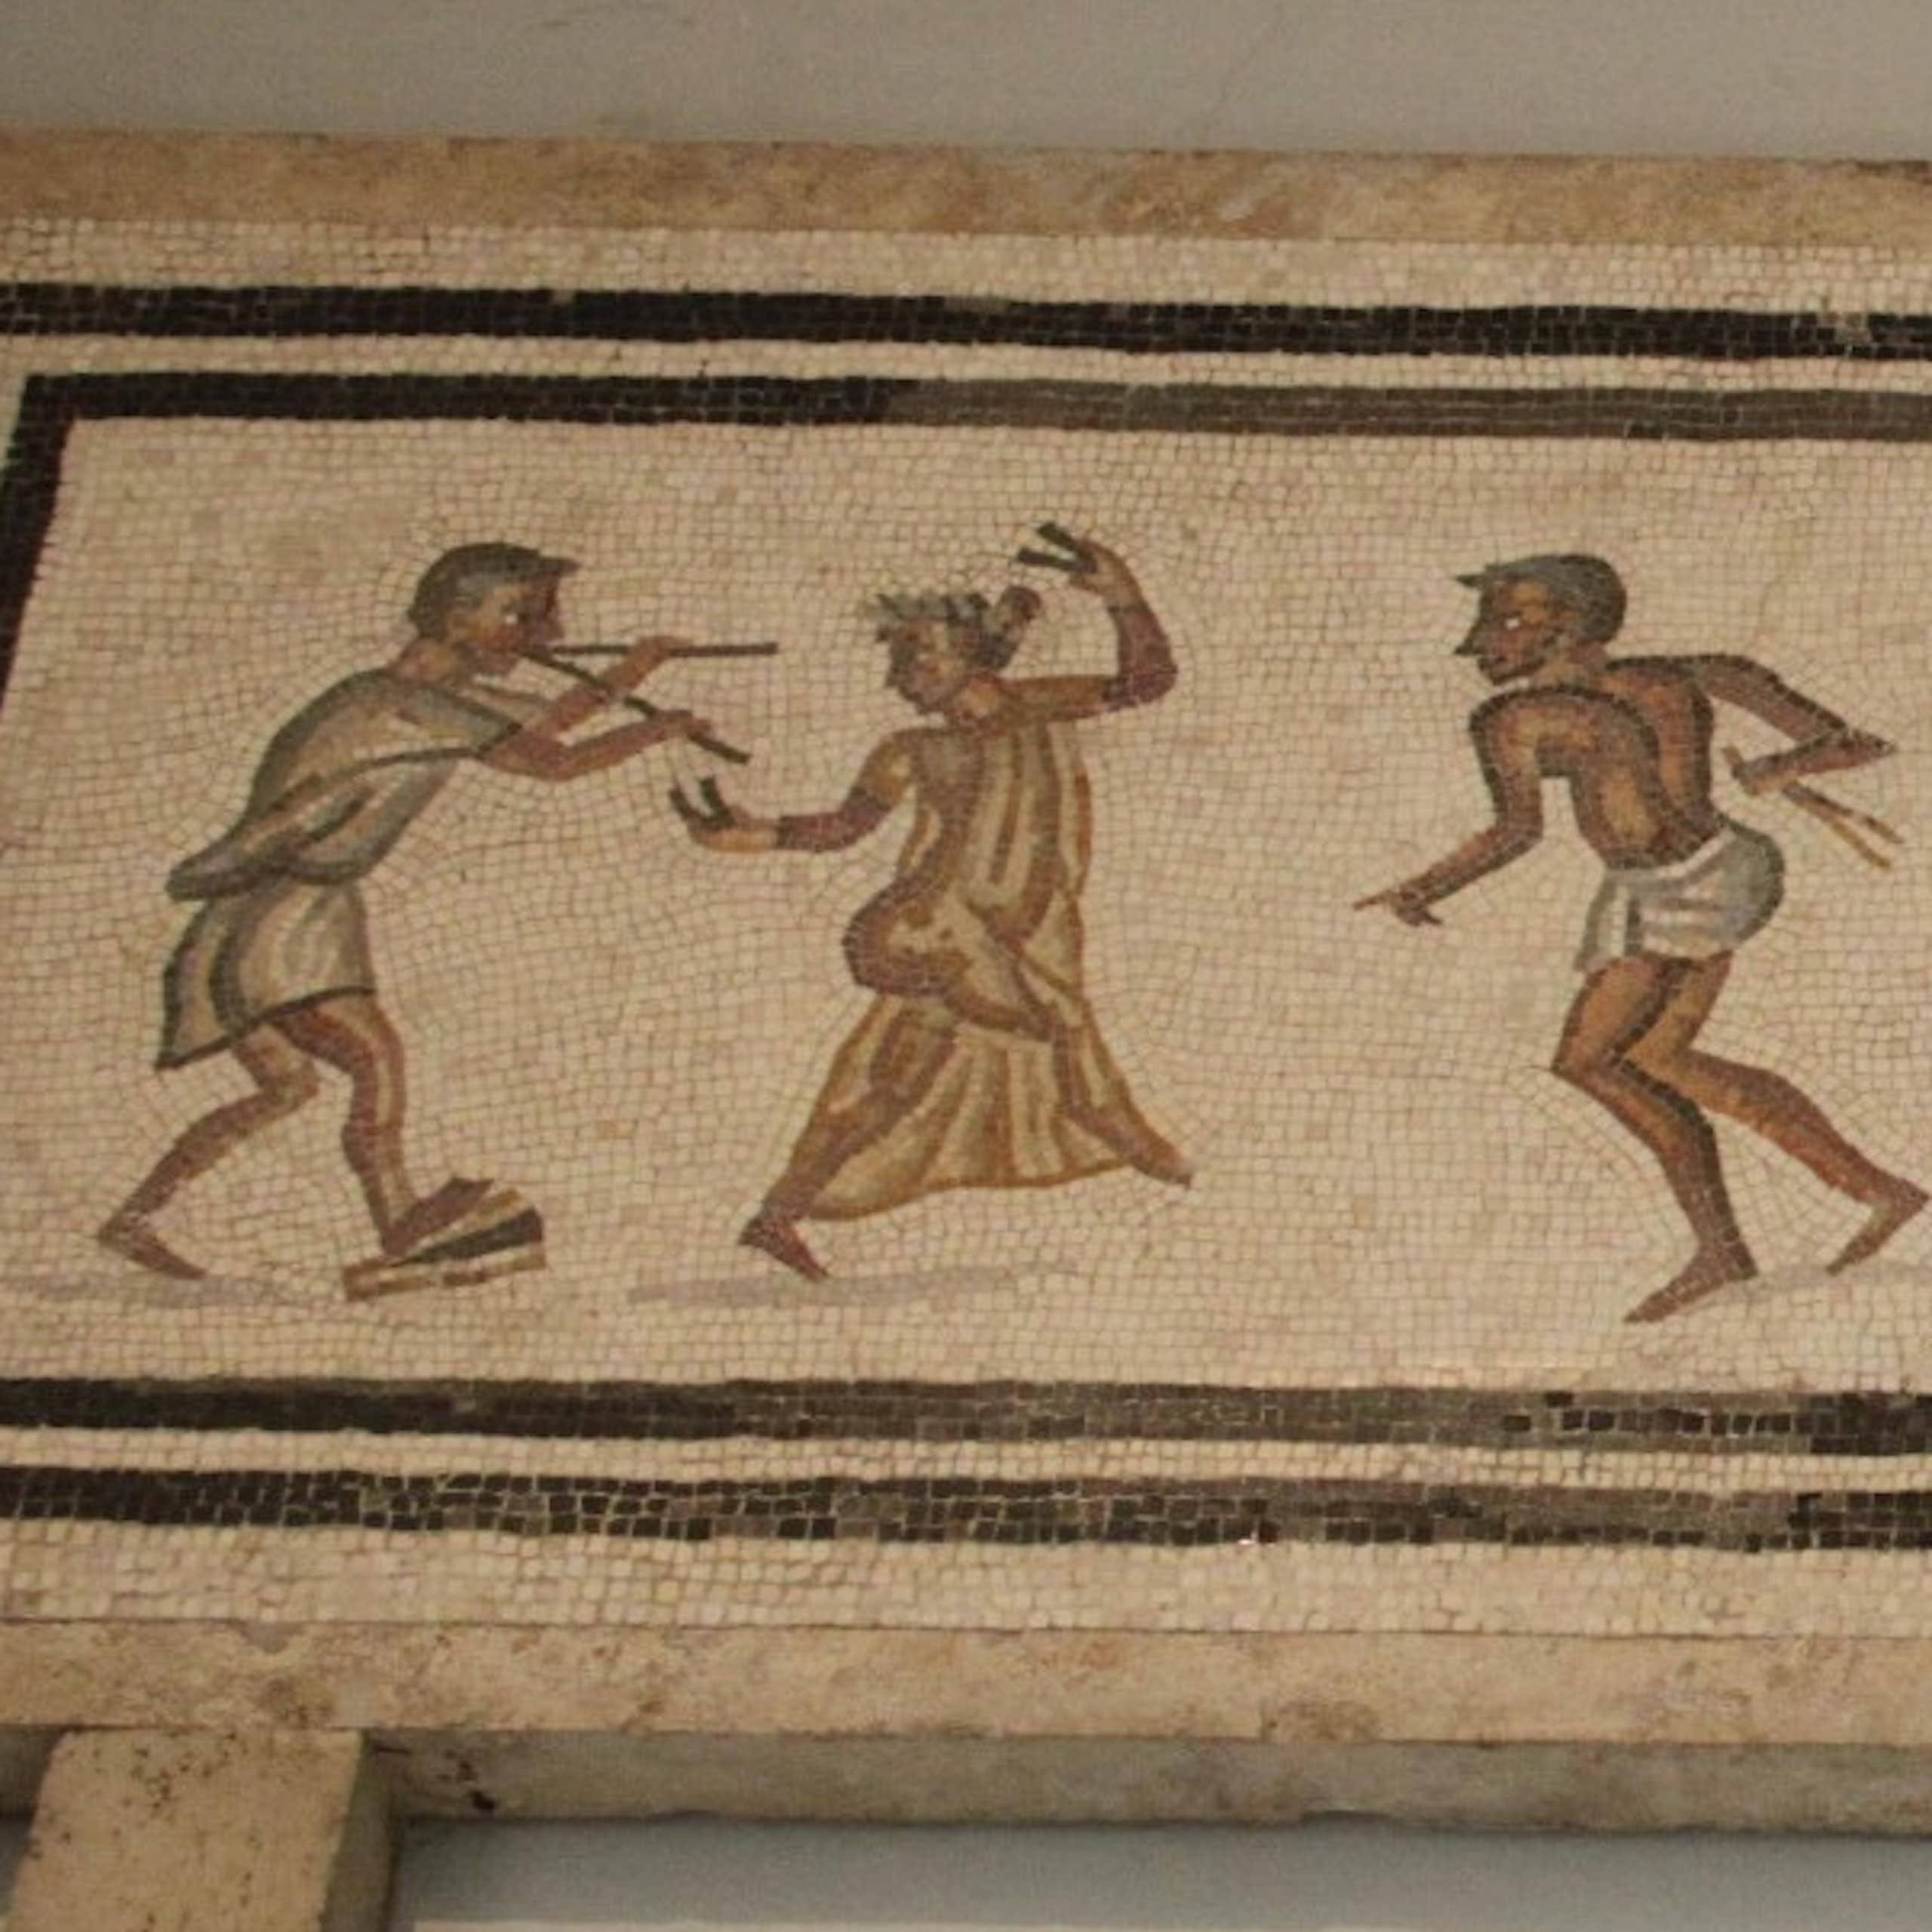 La música y la danza ya subían a “escena” en el mundo romano